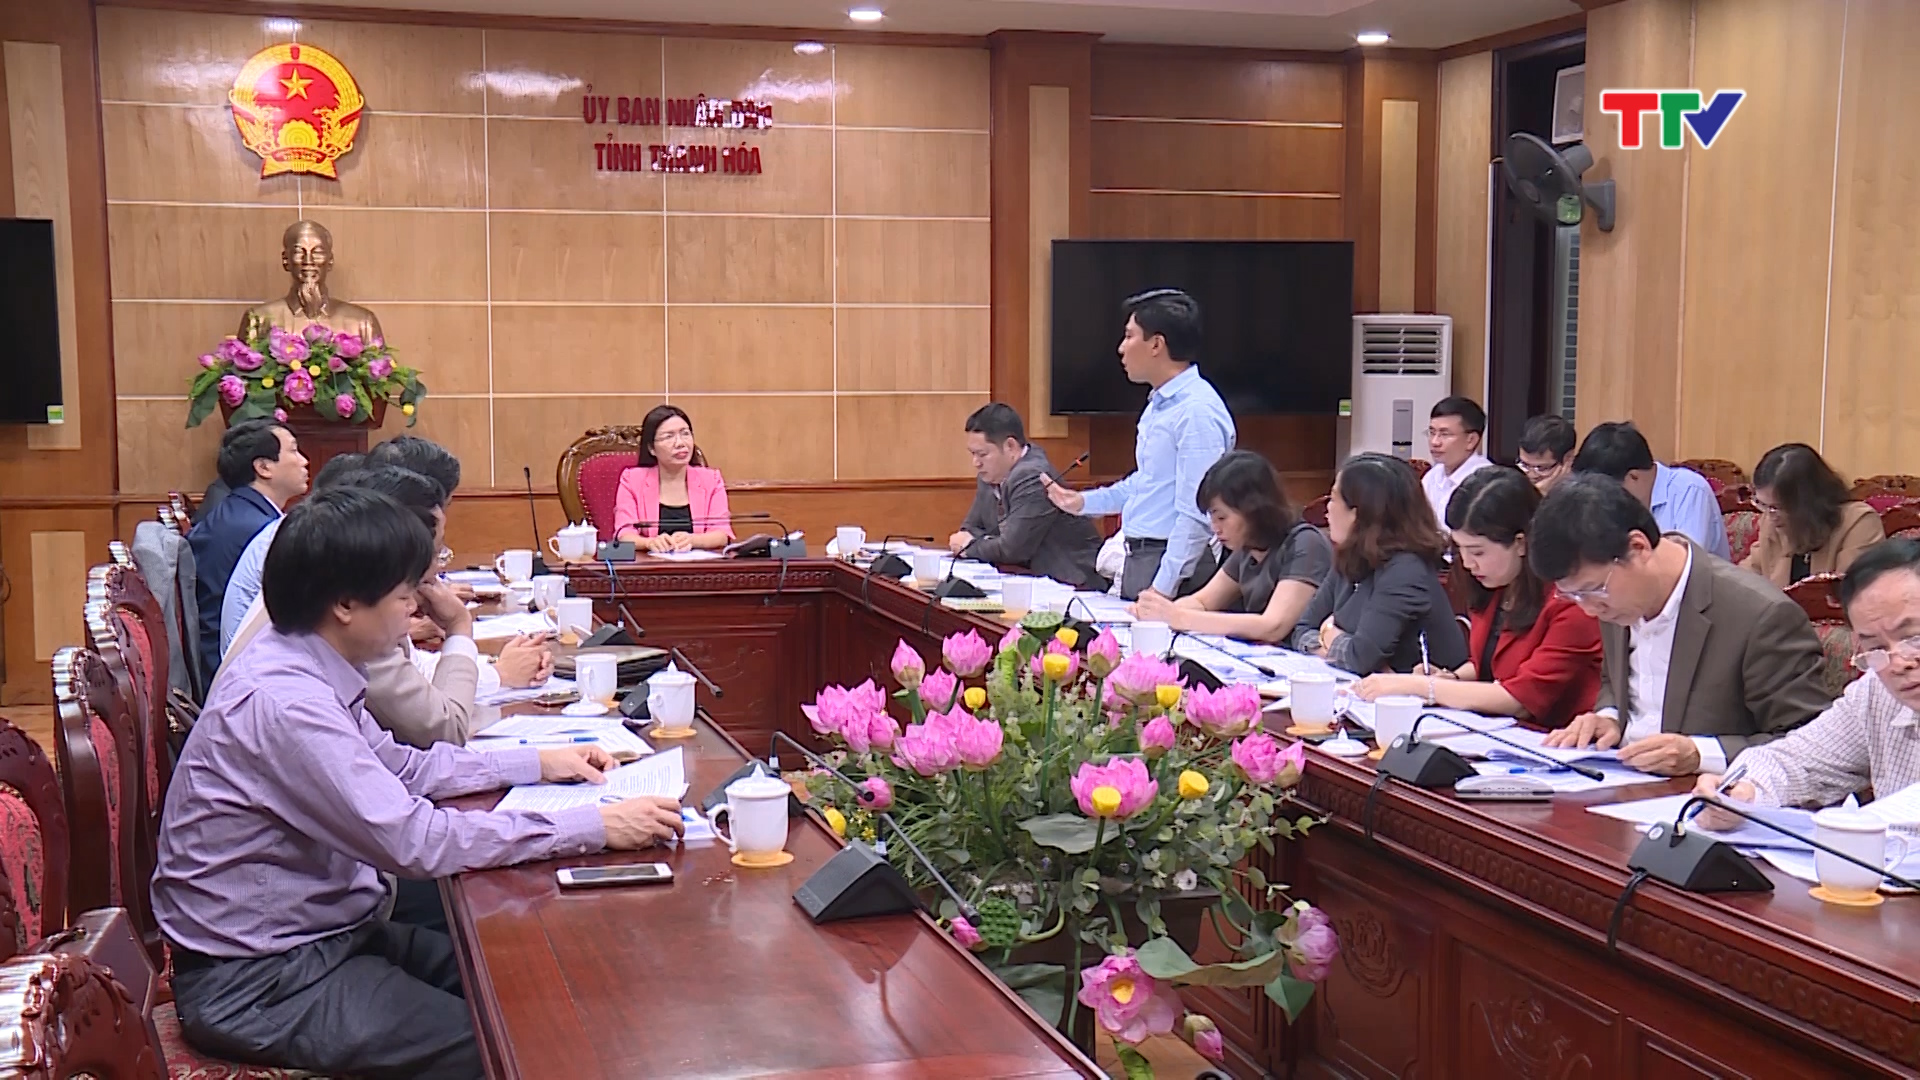 Đồng chí Lê Thị Thìn, Phó Chủ tịch UBND tỉnh  chủ trì hội nghị nghe báo cáo dự thảo Quy chế xây dựng, quản lý và thực hiện Chương trình xúc tiến đầu tư, thương mại và du lịch tỉnh Thanh Hóa.